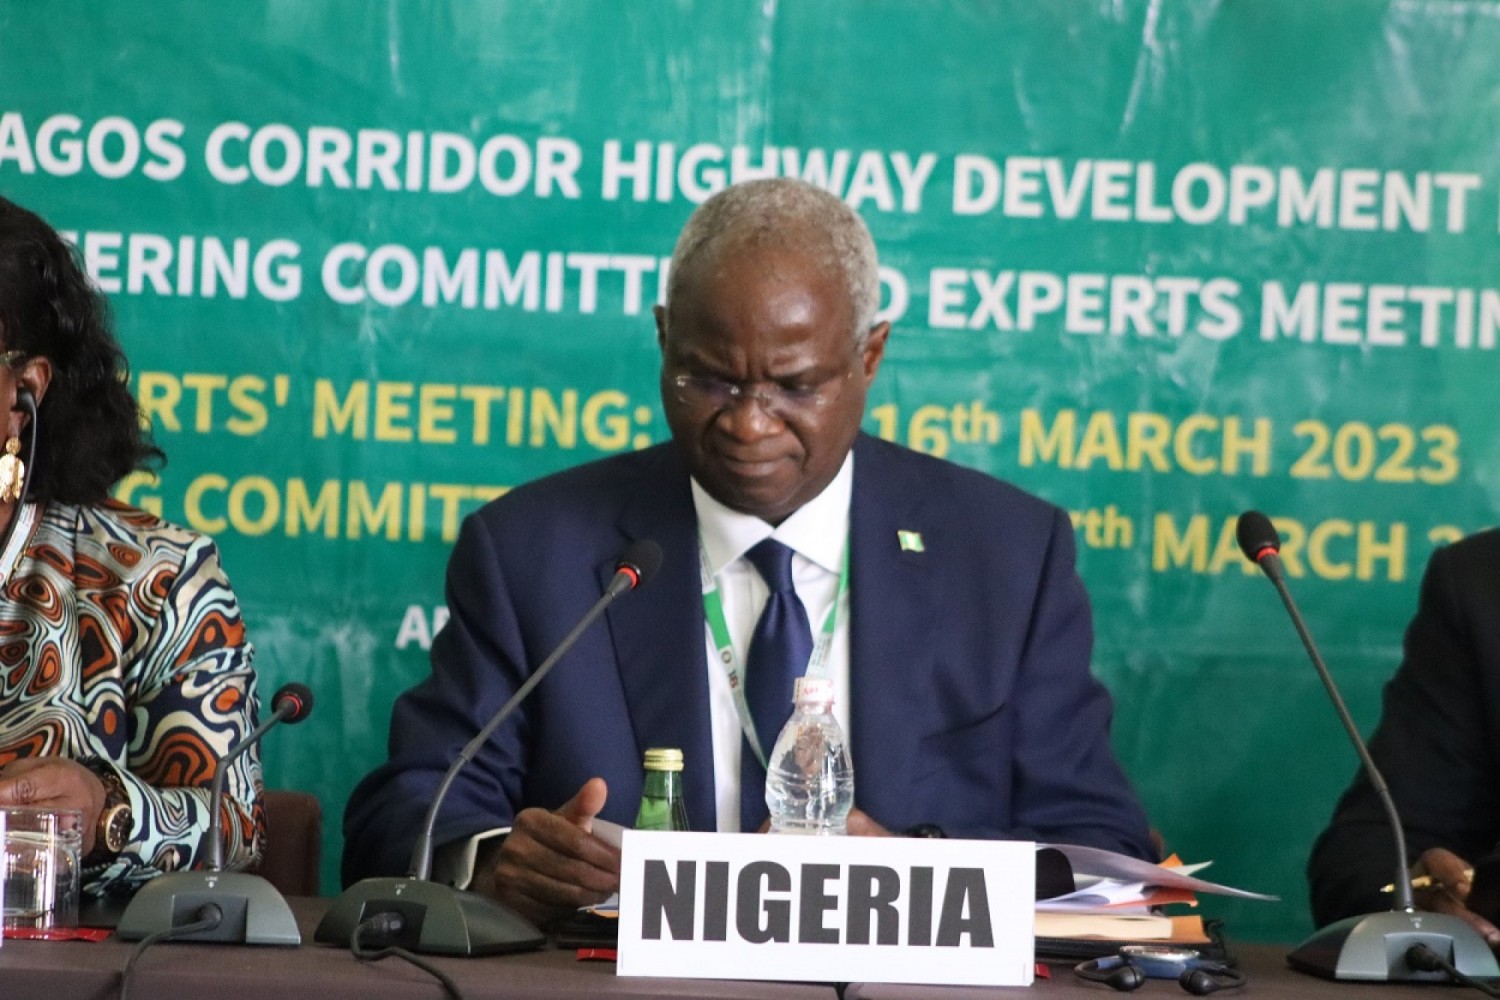 Côte d'Ivoire : Retard du projet autoroute Abidjan-Lagos, un  Ministre Nigerian dénonce des calendriers politiques différents et des différences tribales et religieuses